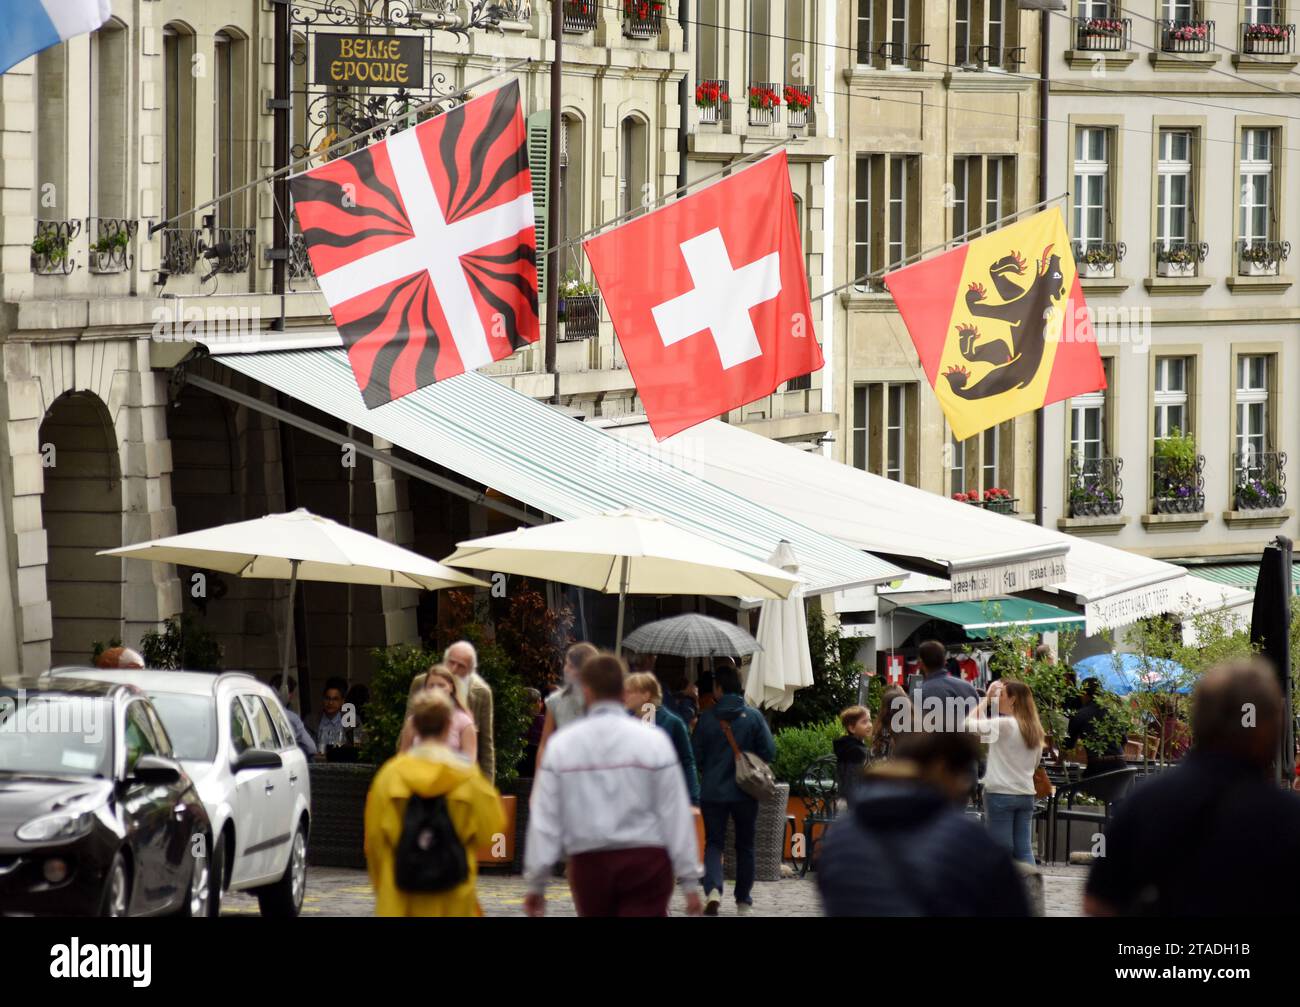 Berne, Suisse - 04 juin 2017 : personnes dans le vieux centre-ville de Berne. Rue commerçante dans la vieille ville médiévale de Berne, Switzerland.er de Berne, Switze Banque D'Images